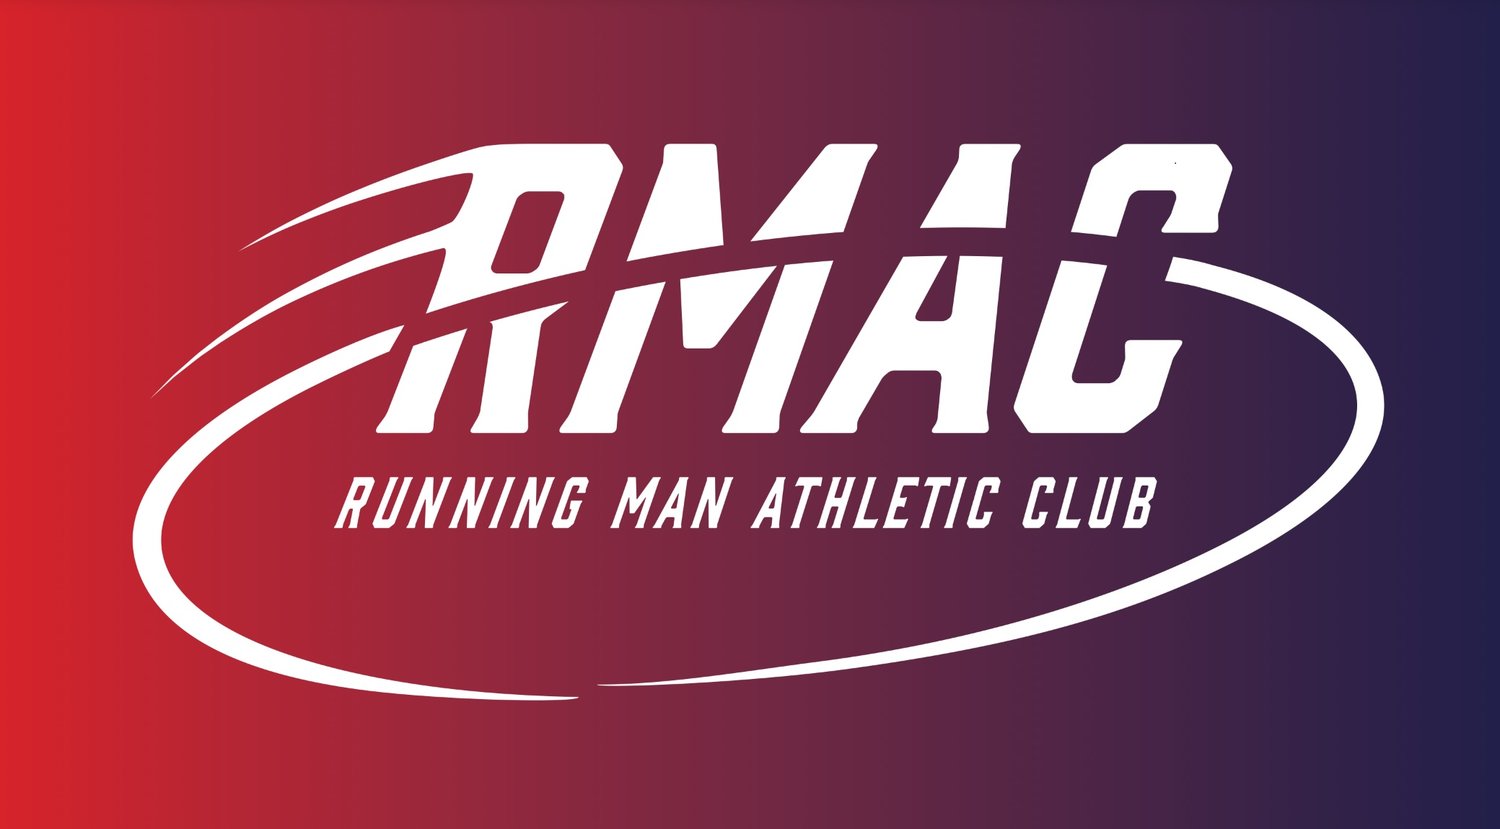 Running Man Athletic Club